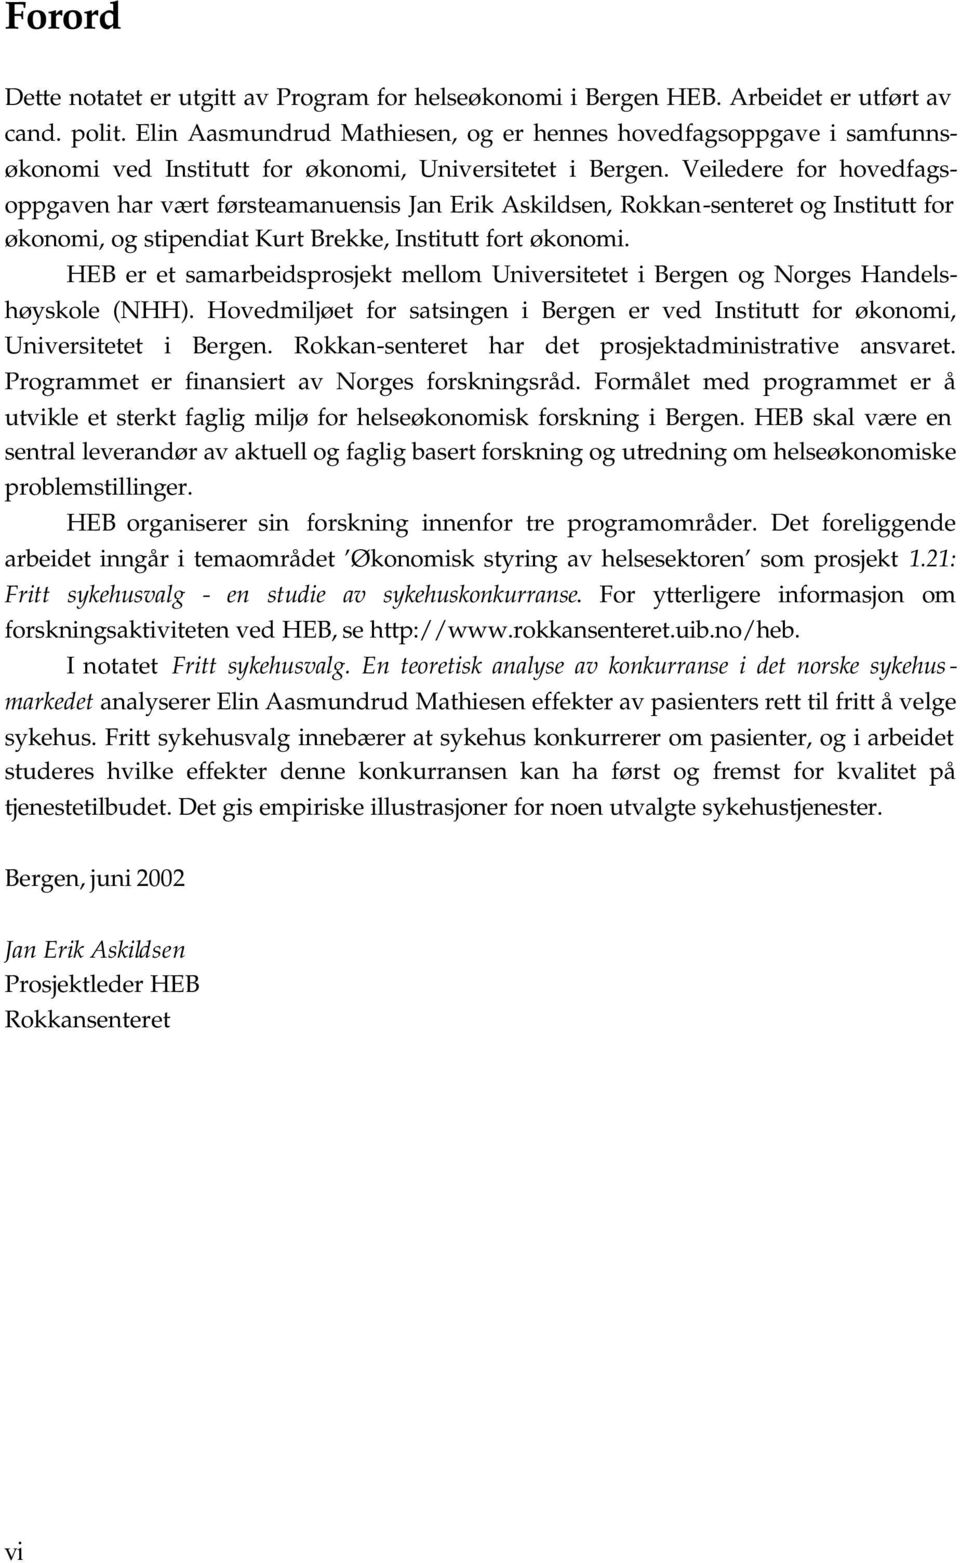 HEB er e samarbedsrosjek mellom Unversee Bergen og Norges Handelshøyskole (NHH. Hovedmljøe for sasngen Bergen er ved Insu for økonom, Unversee Bergen. Rokkan-senere har de rosjekadmnsrave ansvare.